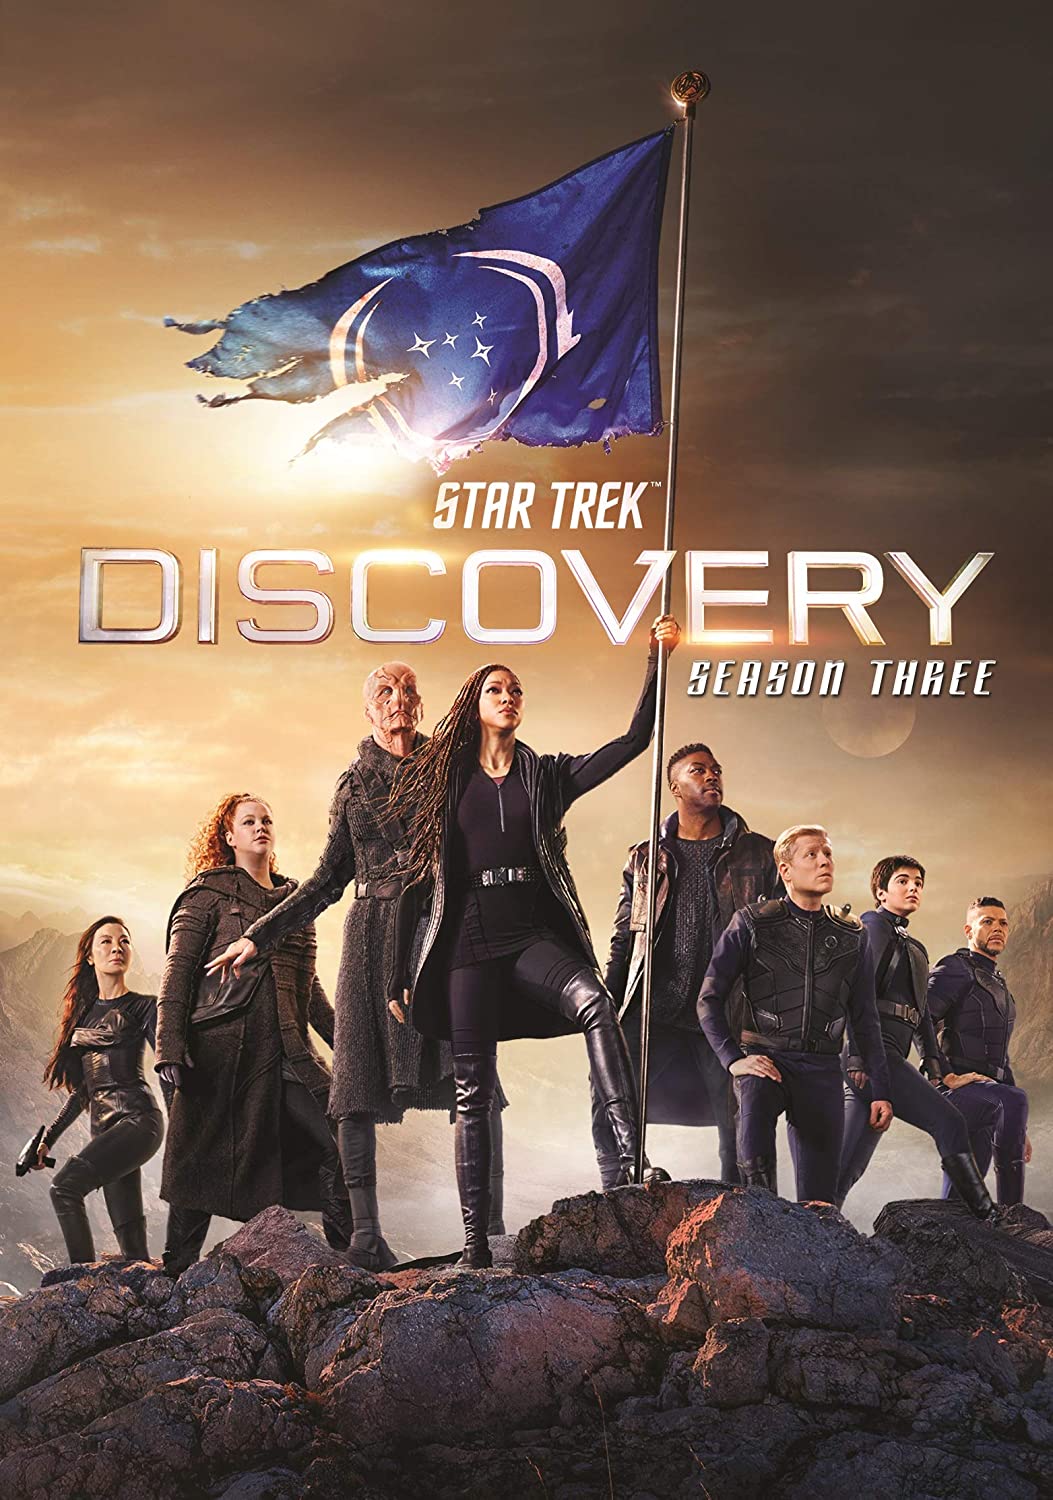 ดูหนังออนไลน์ฟรี Star Trek Discovery Season 3 EP9 สตาร์ เทรค ดิสคัฟเวอรี่ ซีซั่นที่ 3 ตอนที่ 9